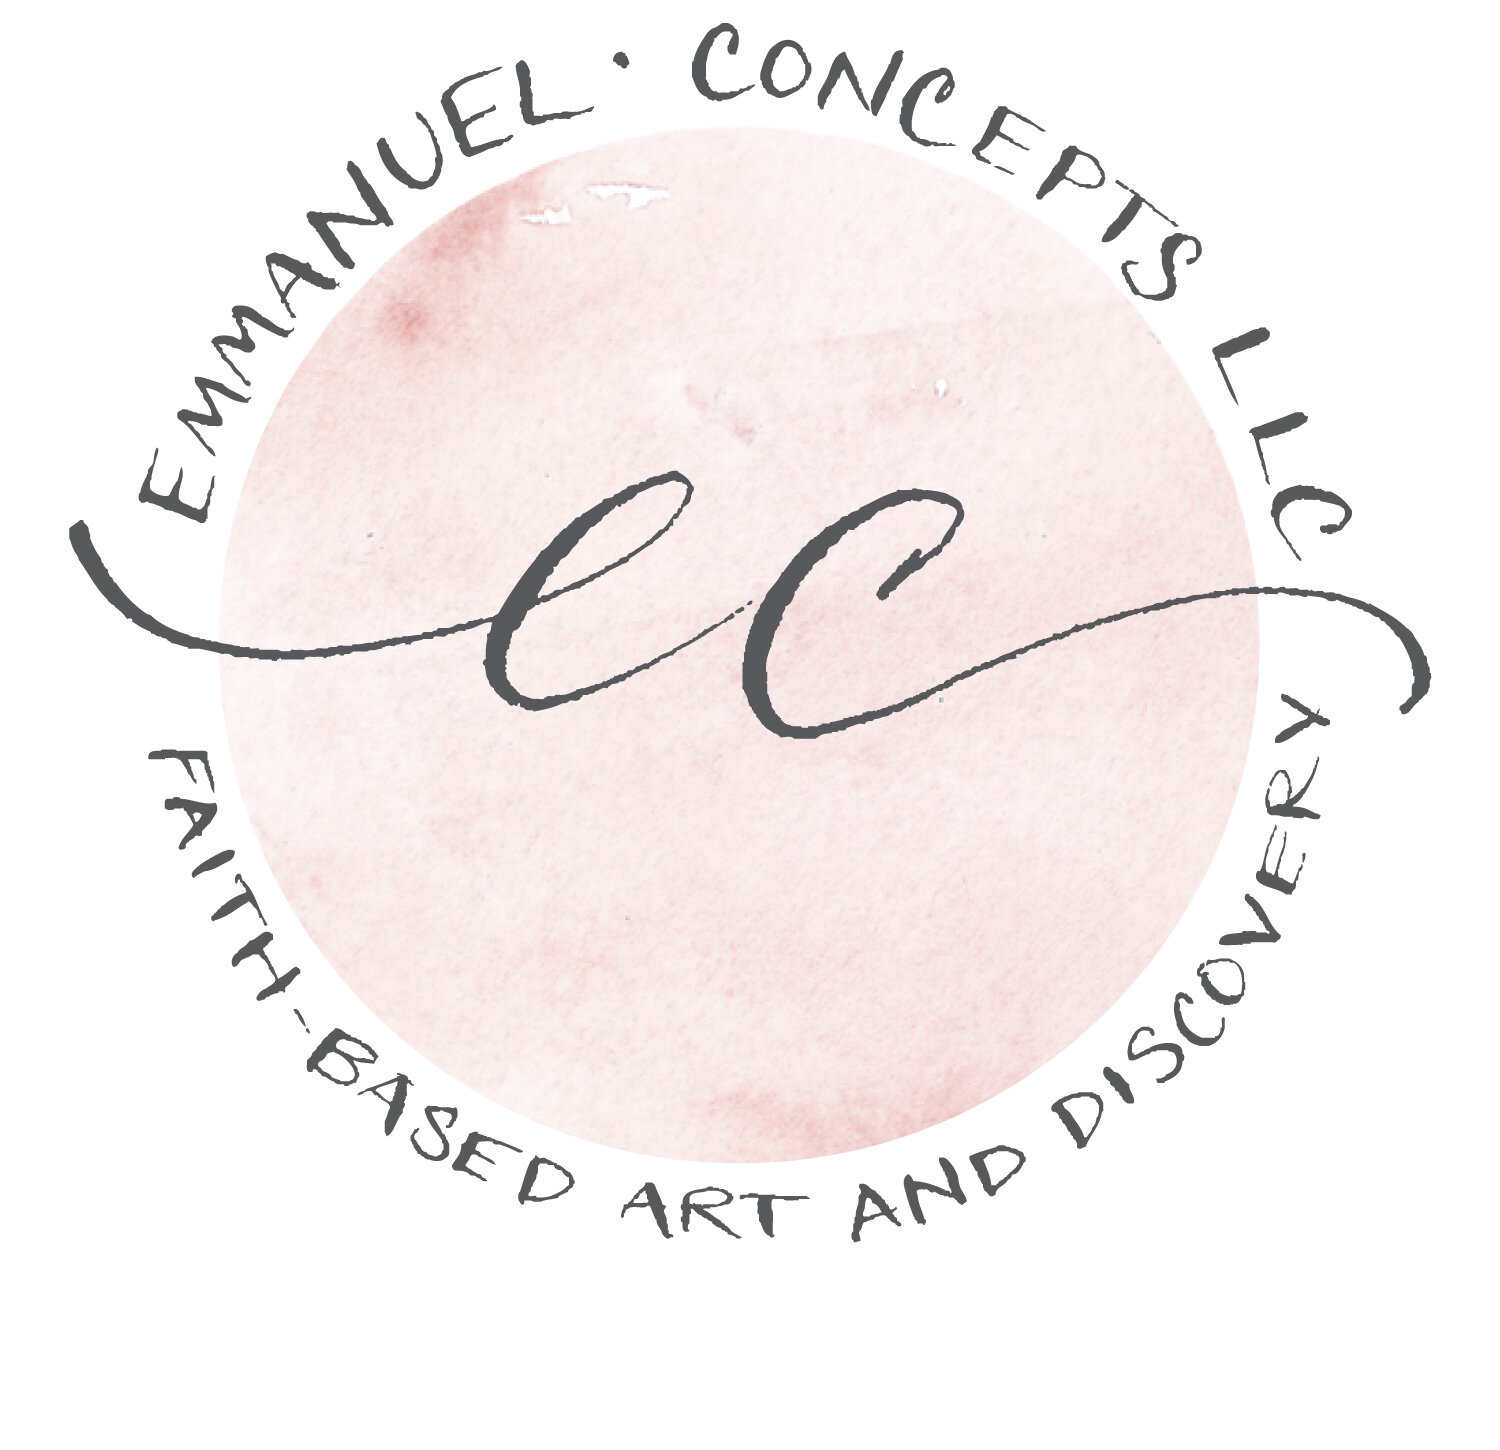 Emmanuel Concepts